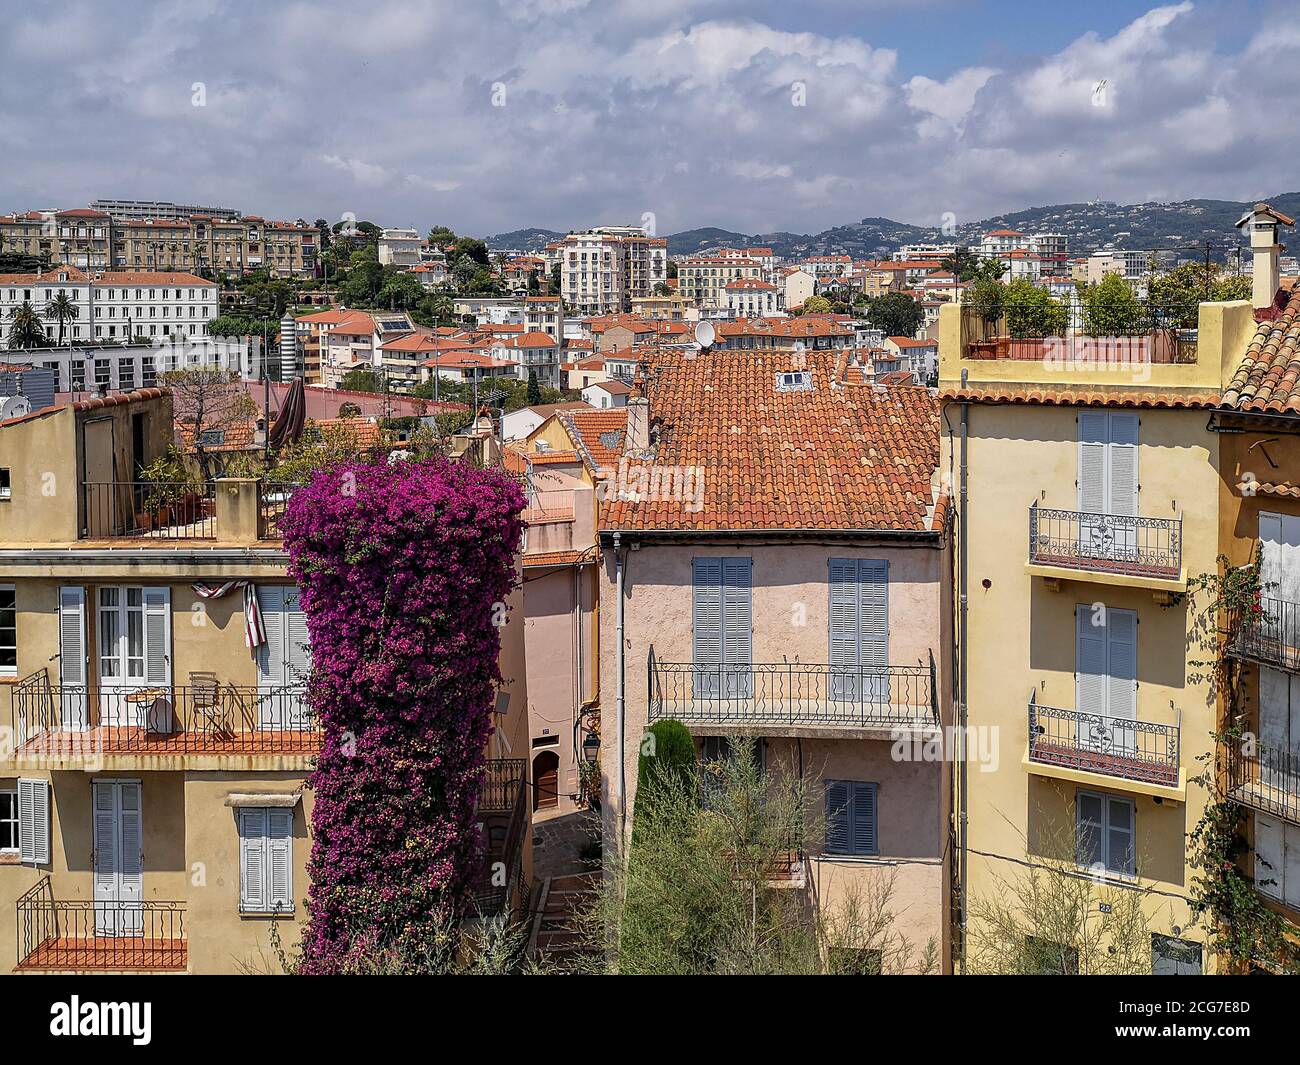 Vue sur la ville de Cannes avec ses vieilles maisons traditionnelles aux toits carrelés de rouge, stores en bois, balcons ouverts, pots de fleurs aux plantes vertes. Banque D'Images